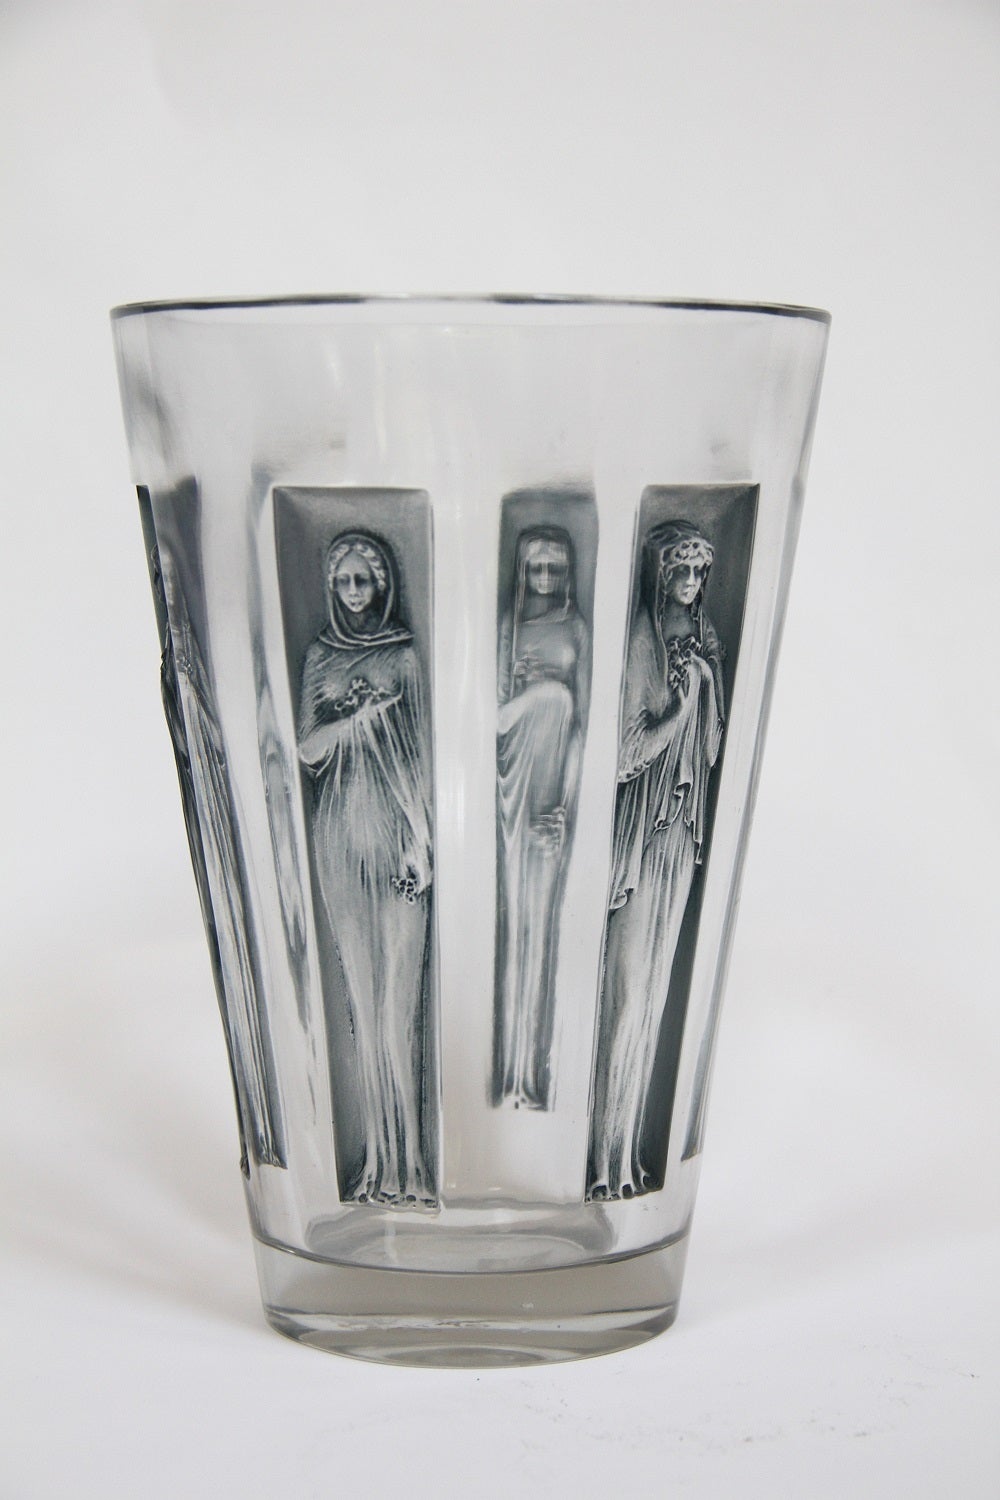 René Lalique glass goblet six figurines vase.
Modele cree en 1912.
verre blanc moule-presse patine et couleur
haut 20cm.
Figure aux catalogues de 1928 et de 1932
et sur le tarif de 1937
non continue apres 1947.

Model created in